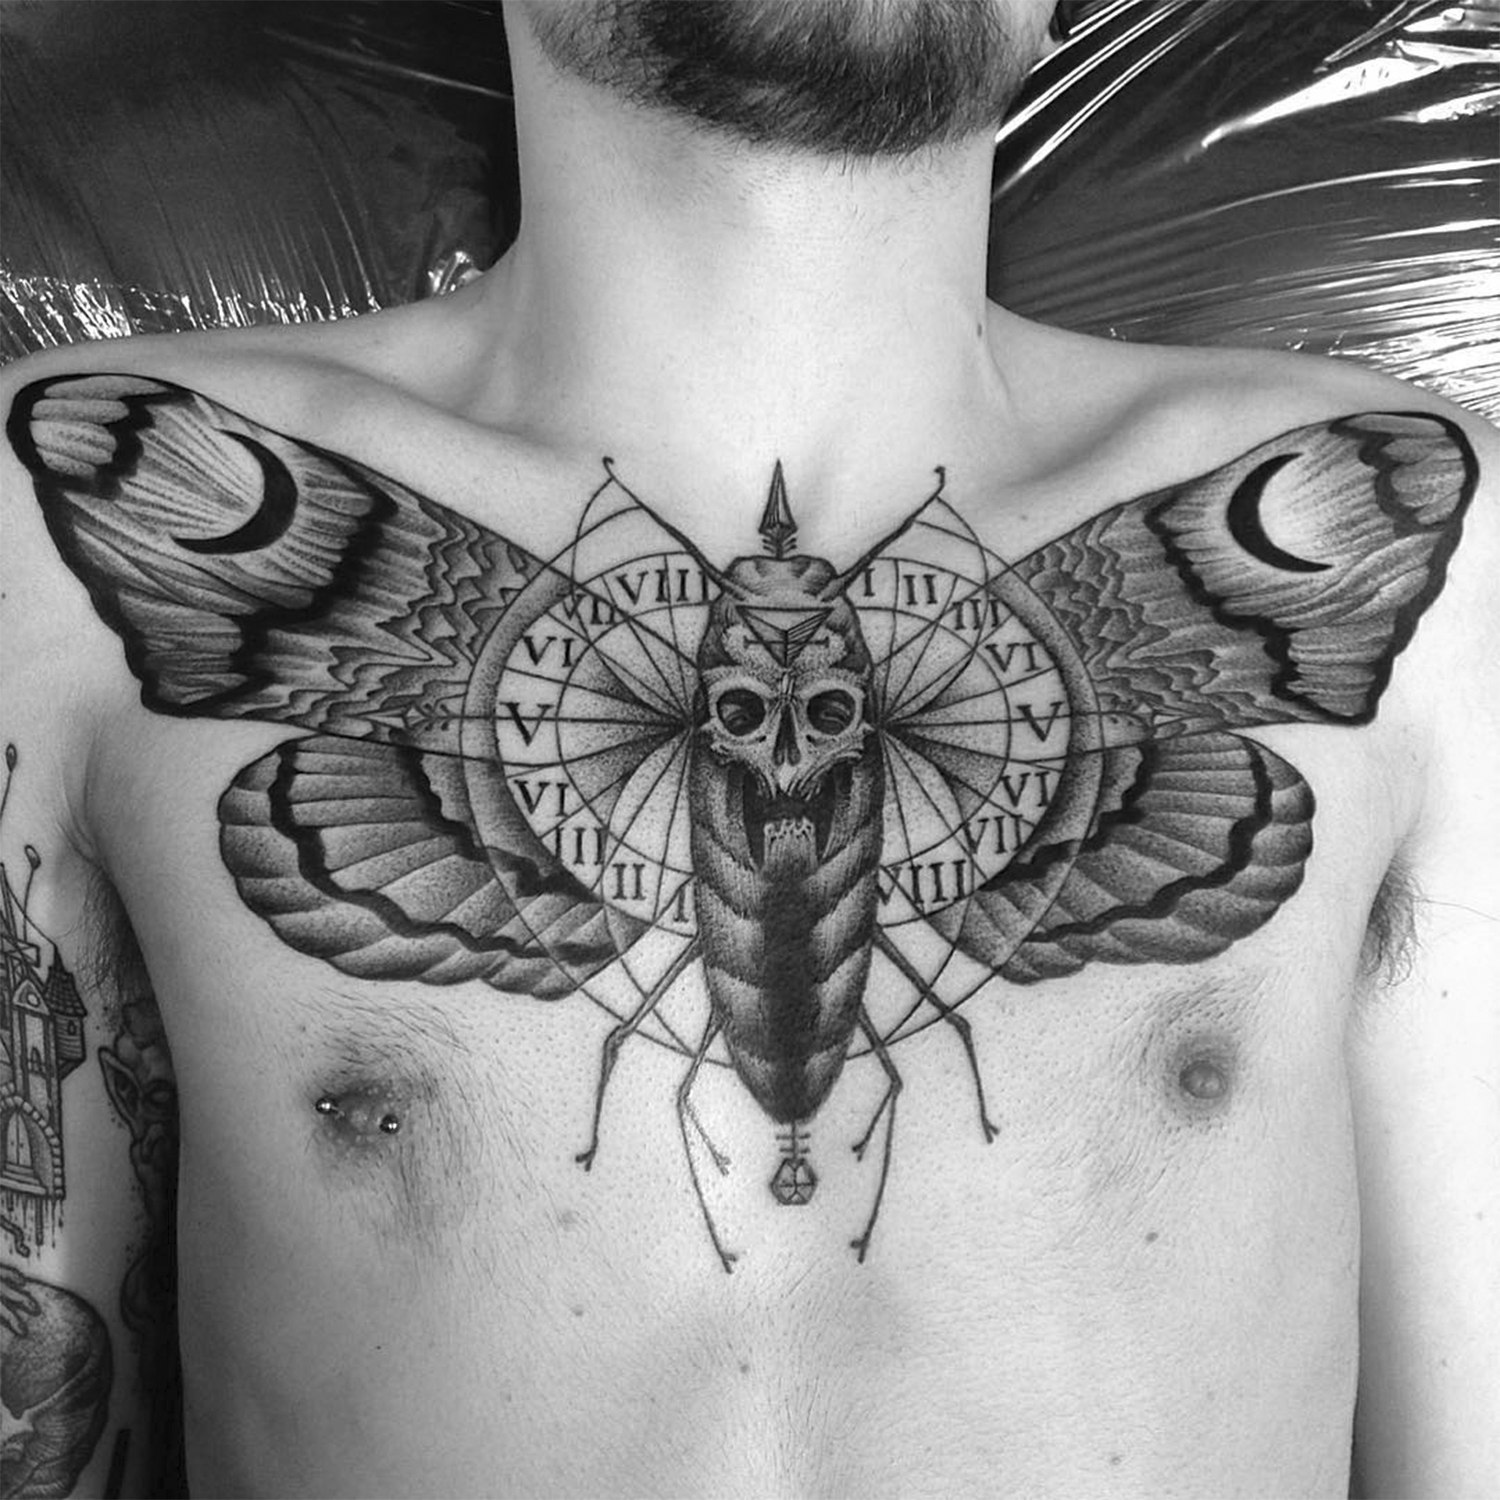 Tetování smrtící můry od MaxAmos